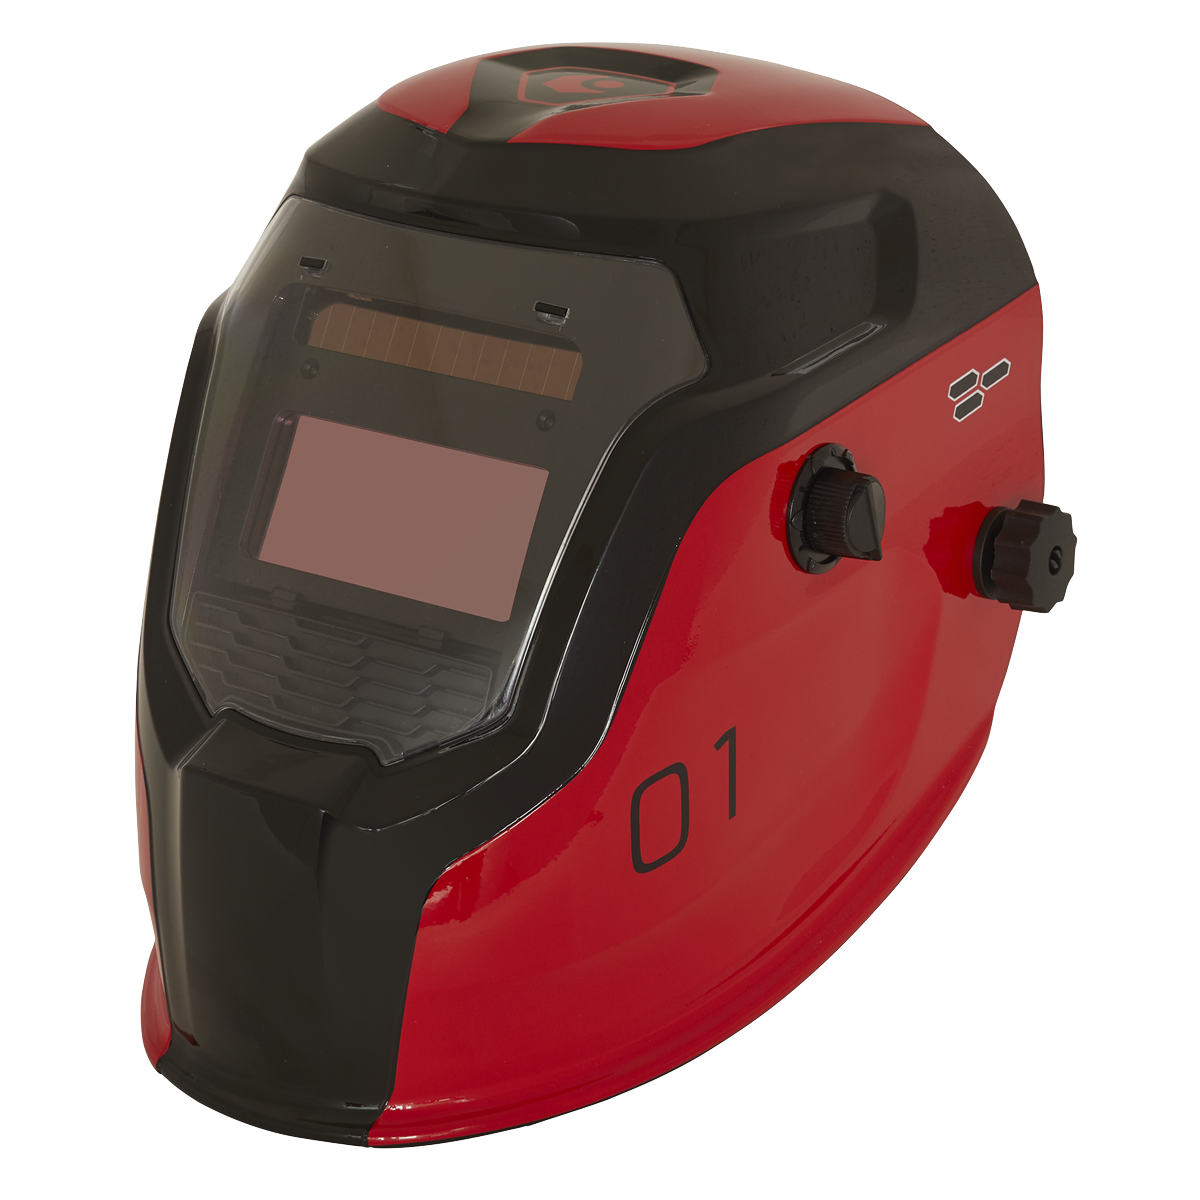 Sealey Welding Helmet Auto Darkening - Shade 9-13 - Red PWH1